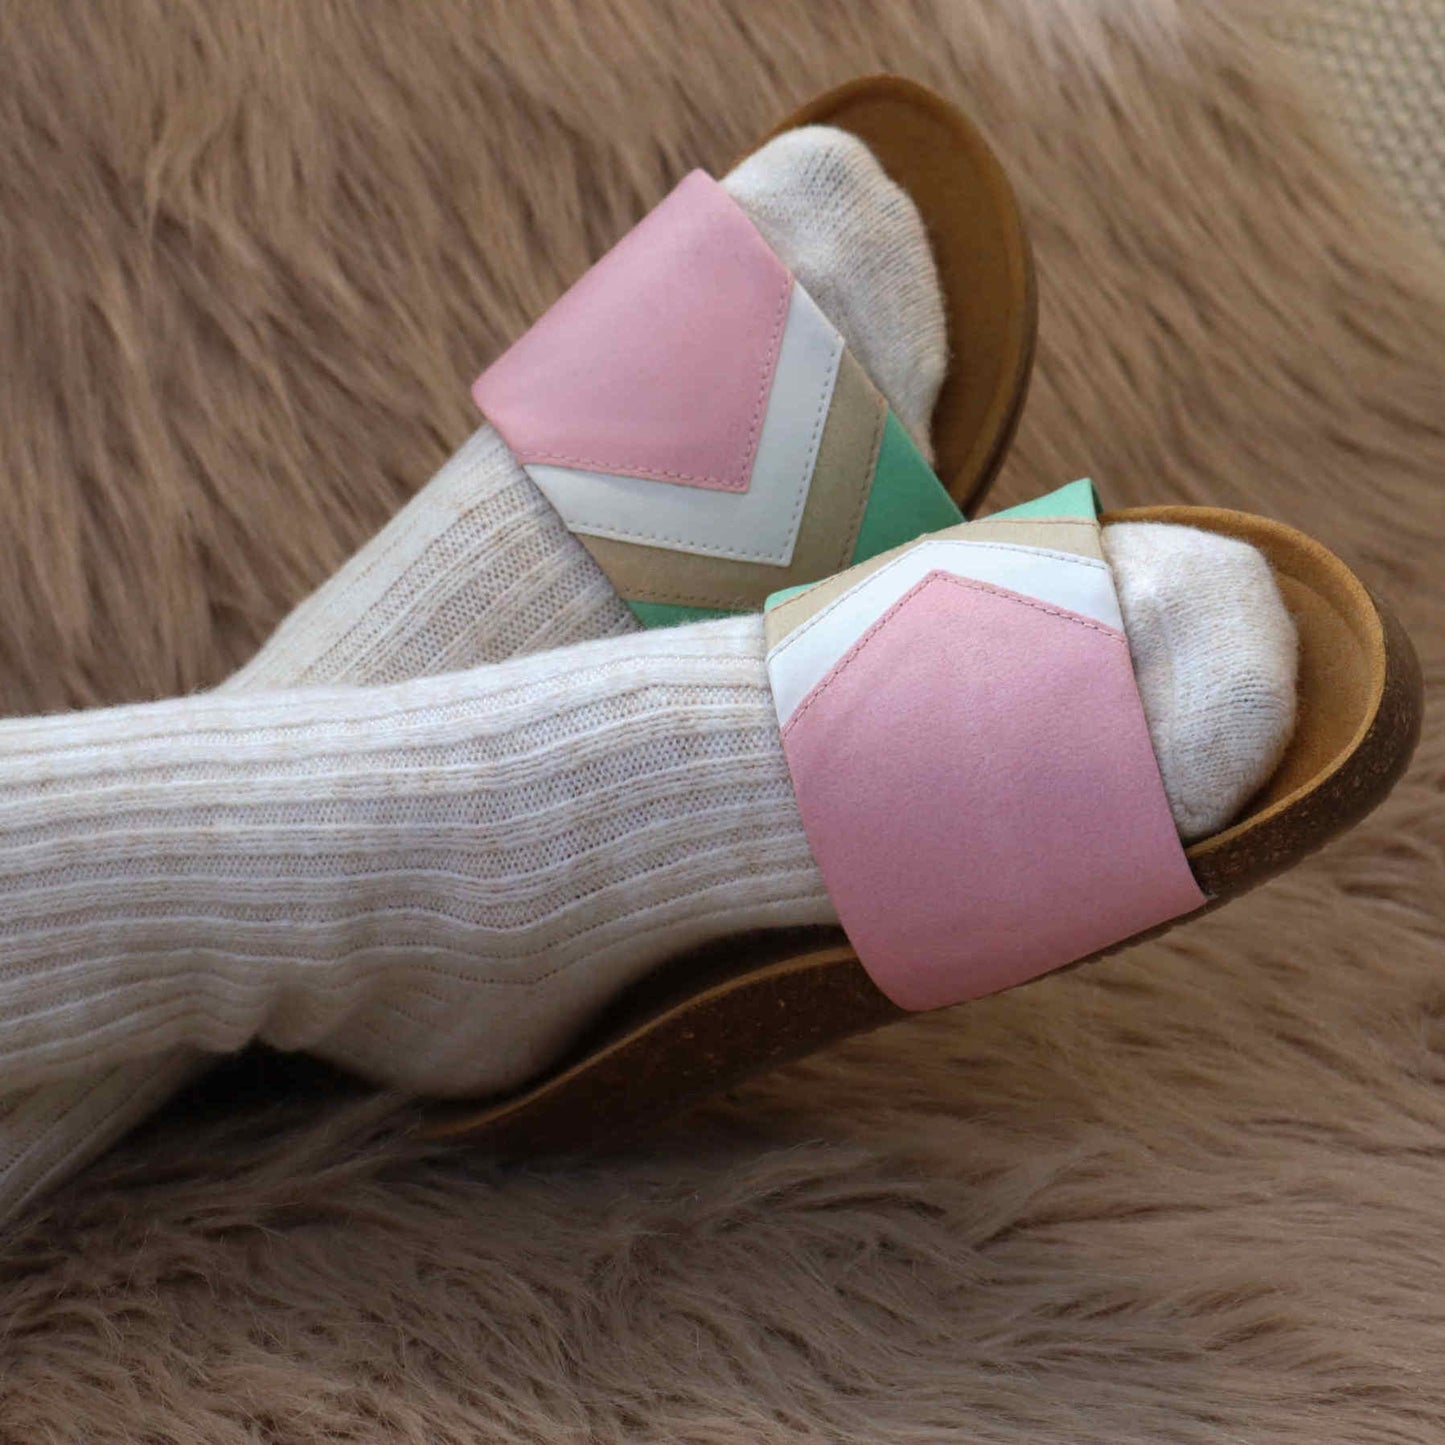 Rosa Hausschuhe Typ Pantolette mit Fußbett, Baumwolleder, flexibel, weich, Marke: Fünve, Modell: Strawberry